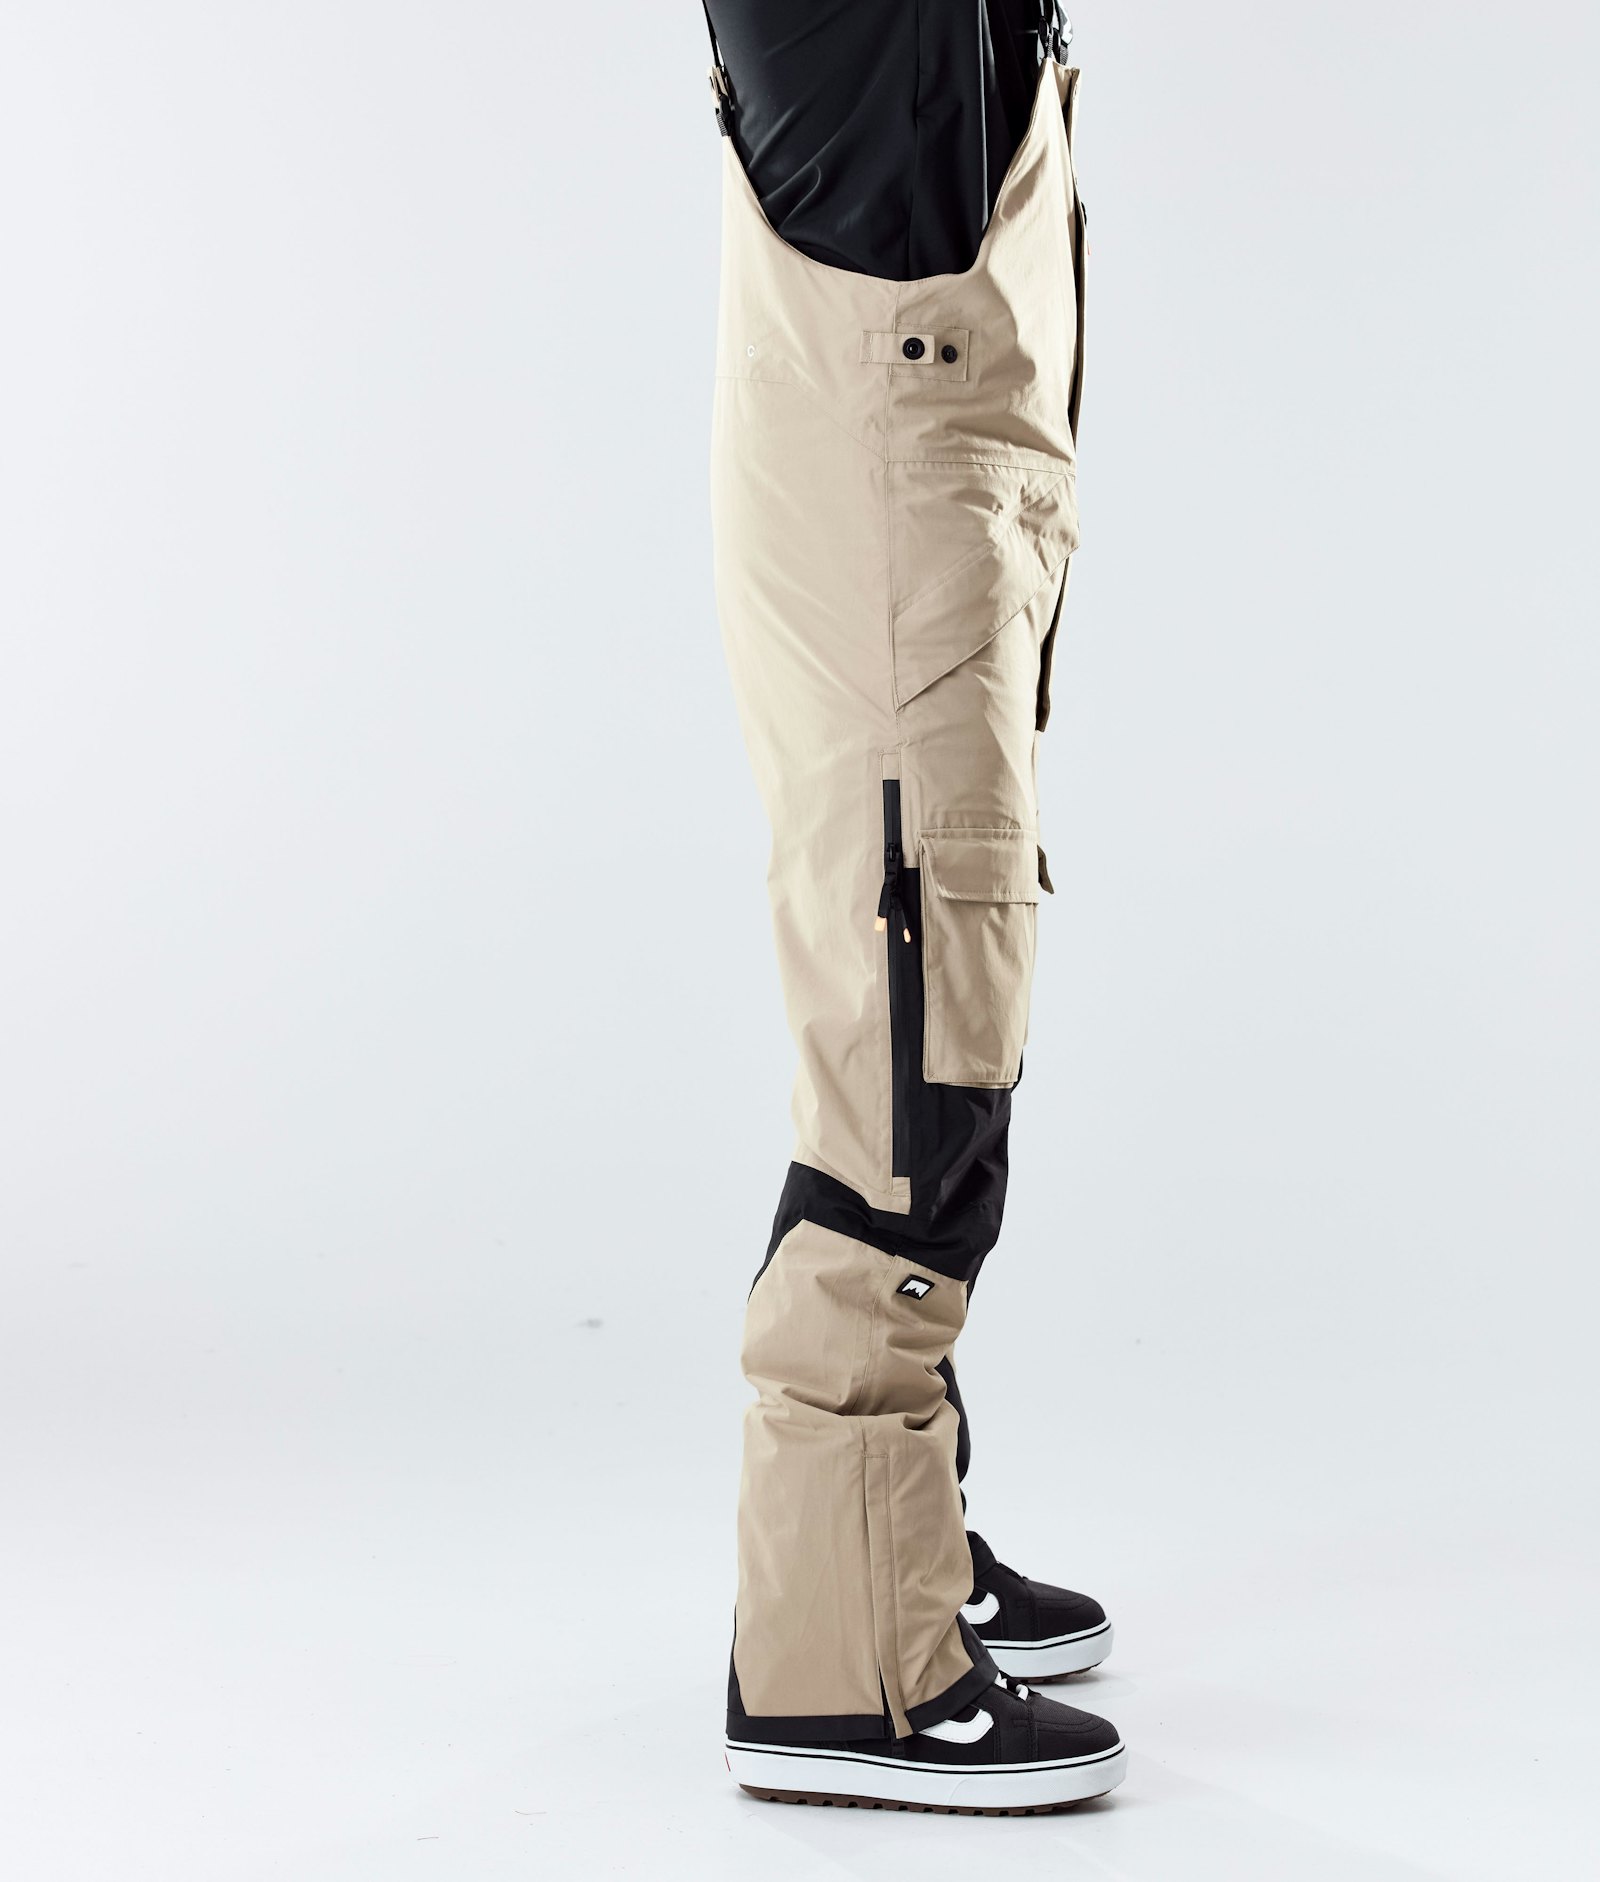 Montec Fawk 2020 Spodnie Snowboardowe Mężczyźni Khaki/Black